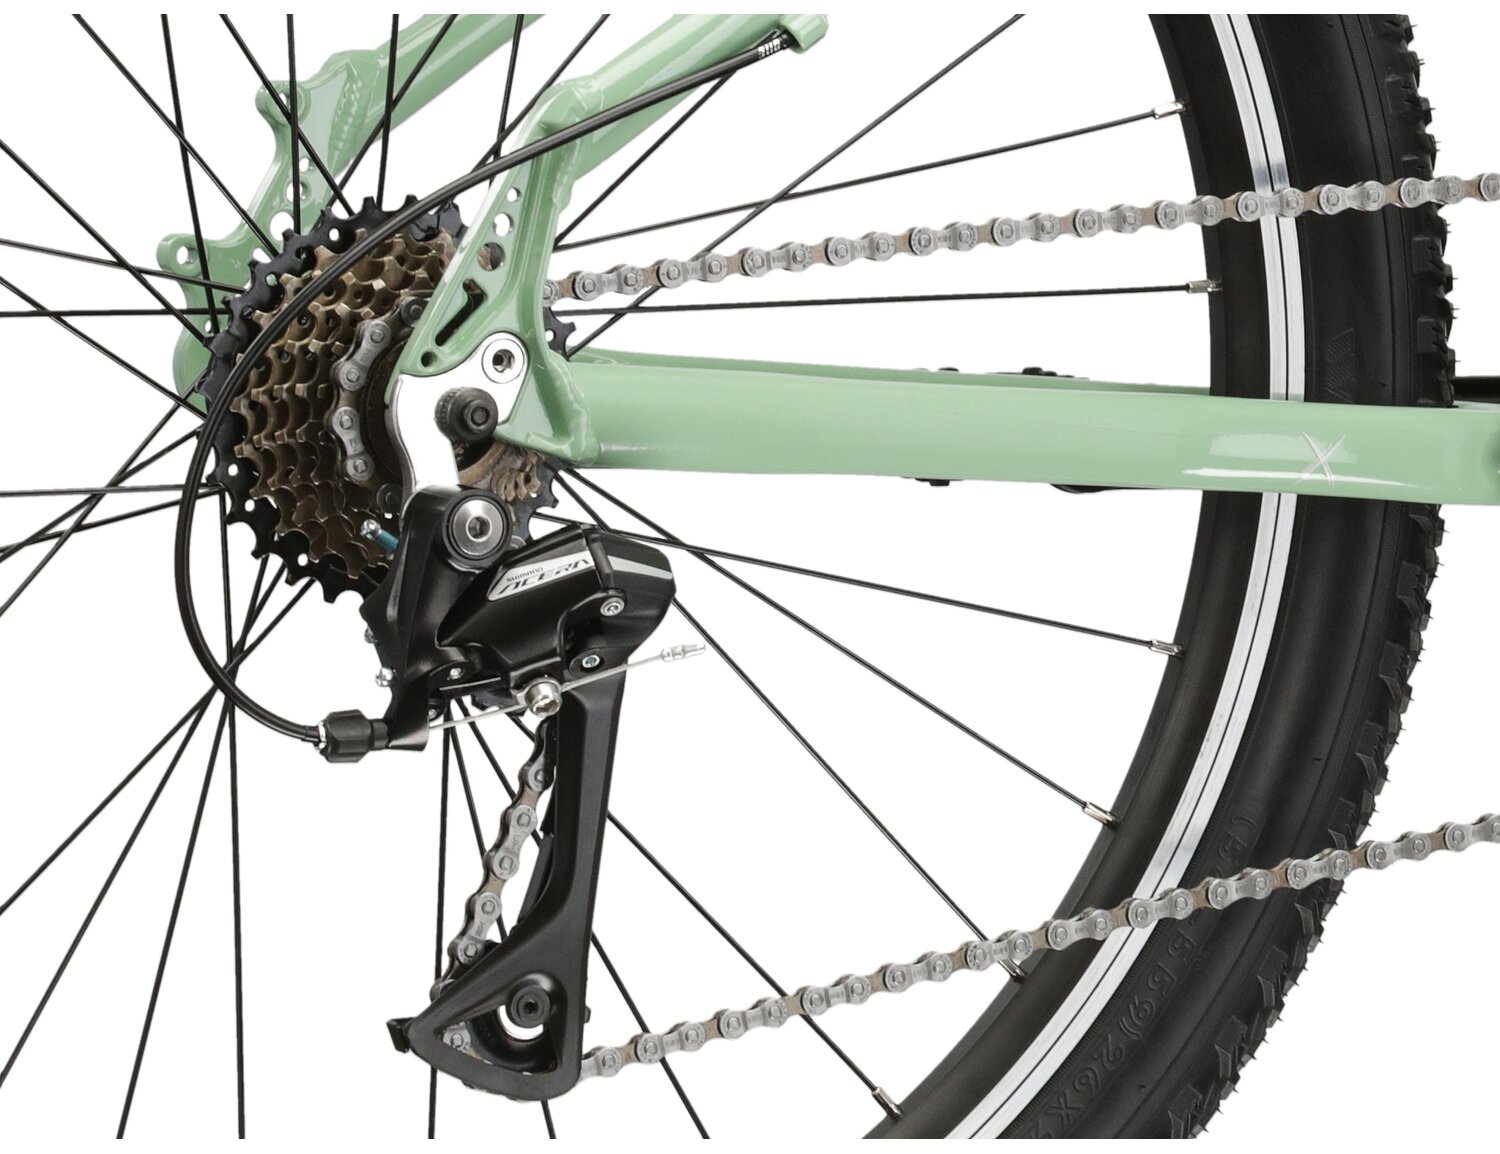  Tylna siedmiobiegowa przerzutka Shimano Acera M3020 oraz hamulce v-brake w rowerze juniorskim KROSS Berg JR 1.0 